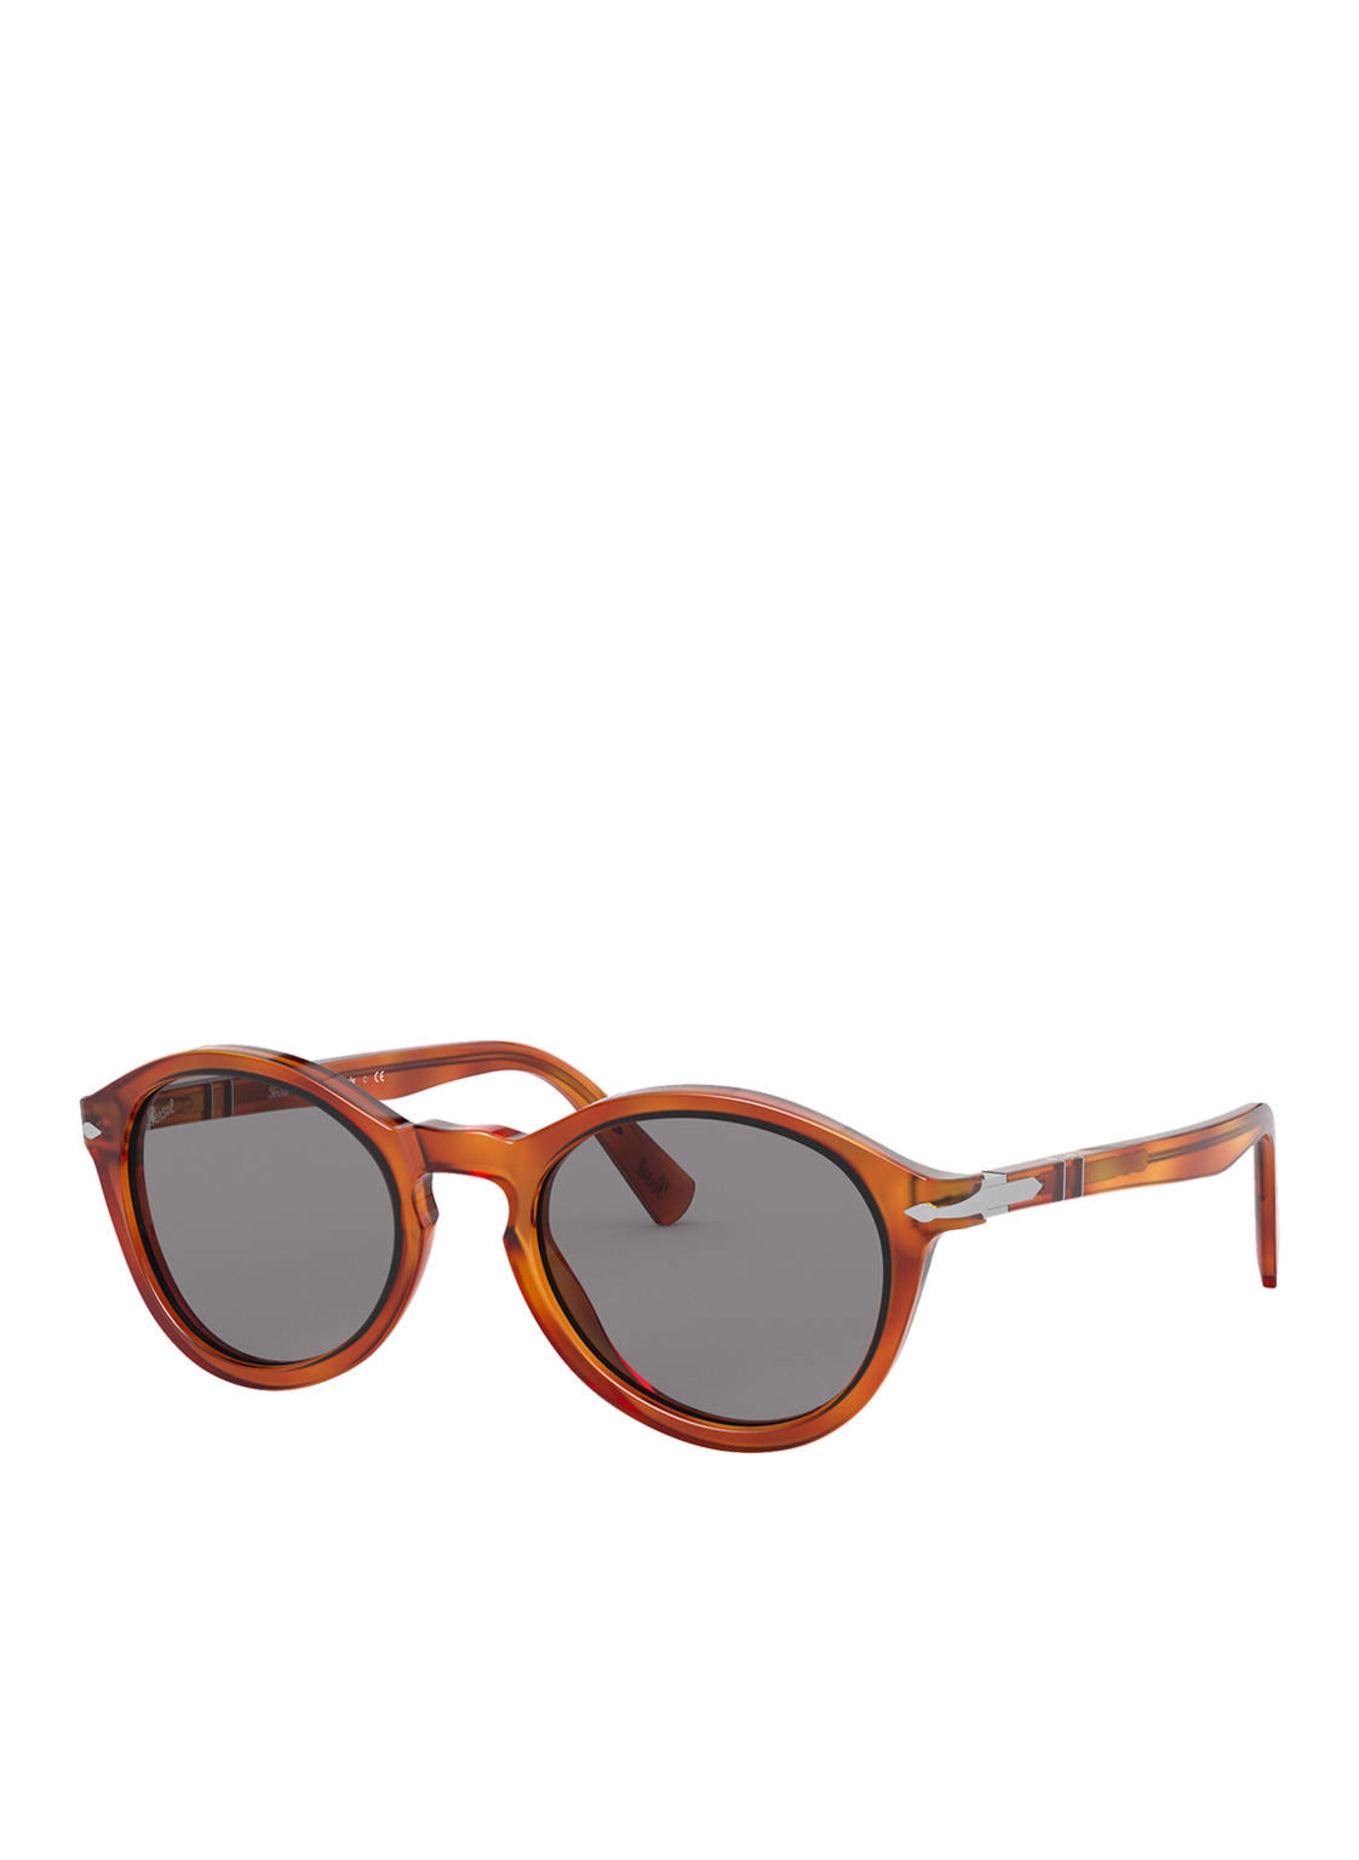 Persol Sunglasses PO3237S, Color: 96/R5 - BROWN/ GRAY (Image 1)